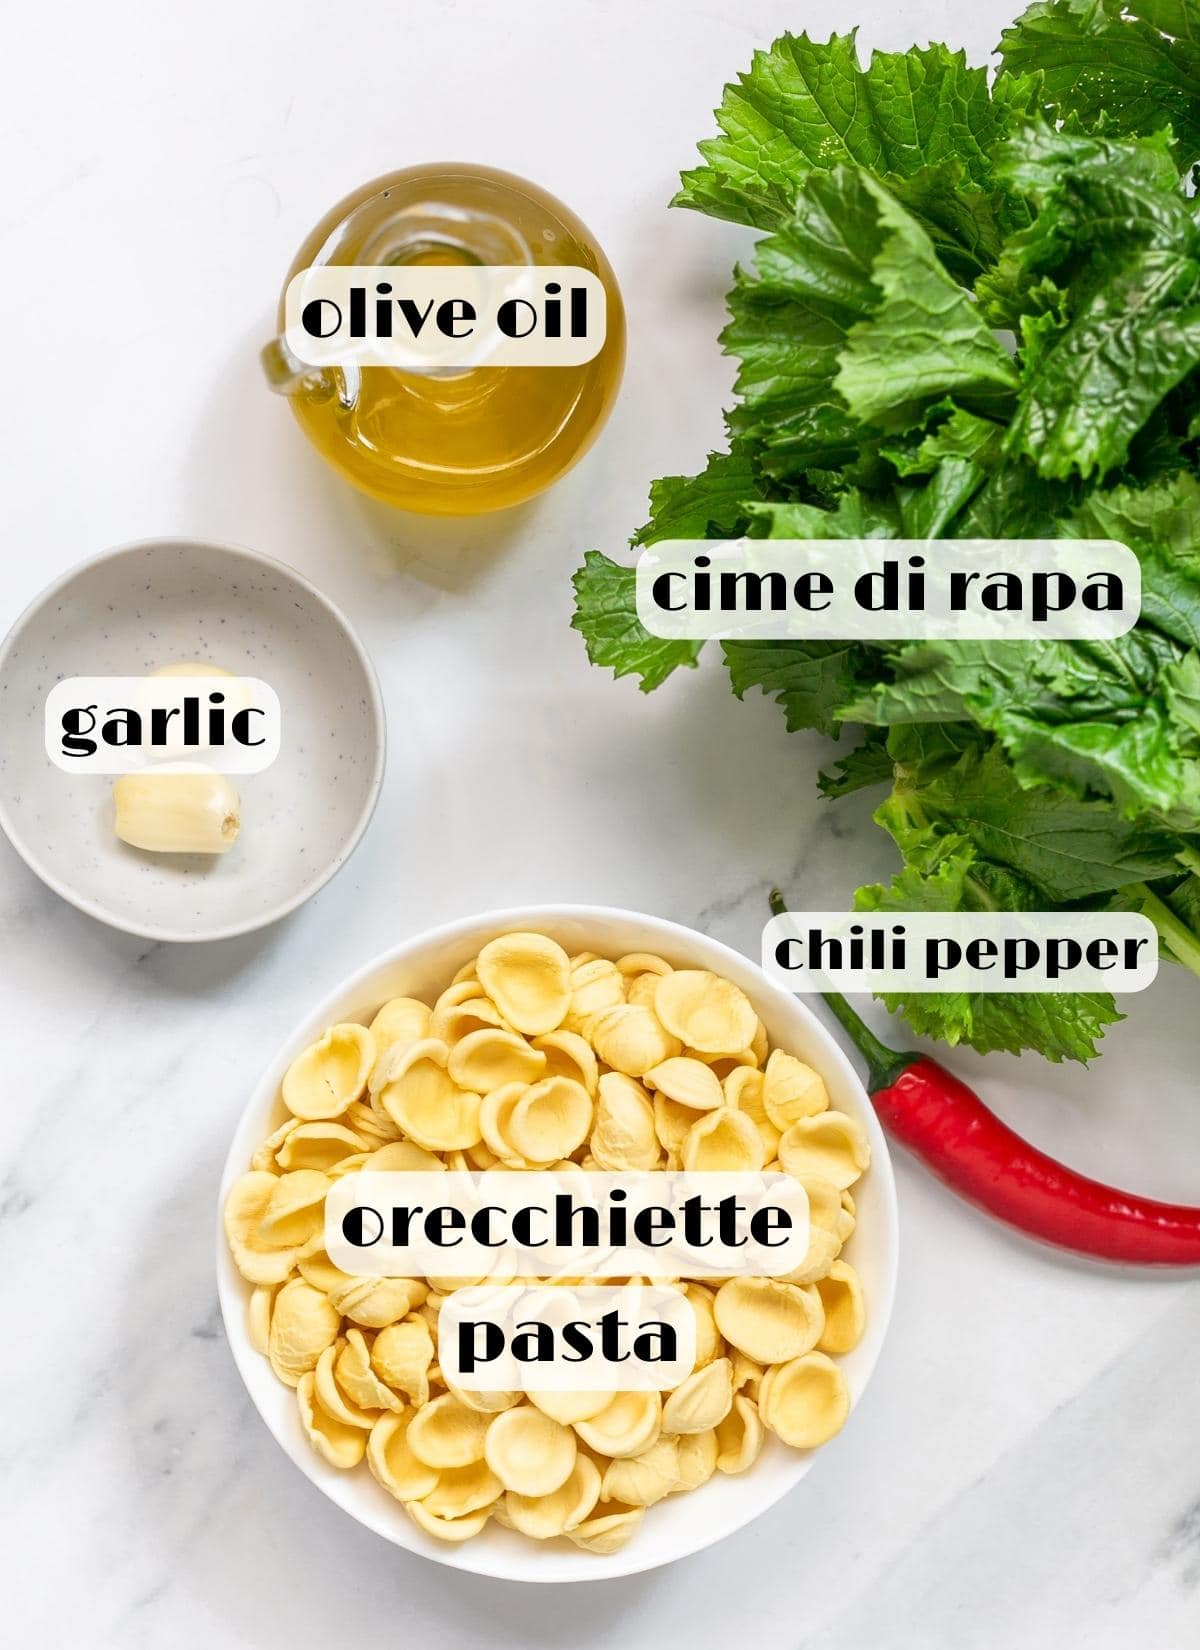 cime di rapa orecchiette recipe ingredients: orecchiette pasta, cime di rapa (broccoli rabe), olive oil, garlic, red chili pepper.